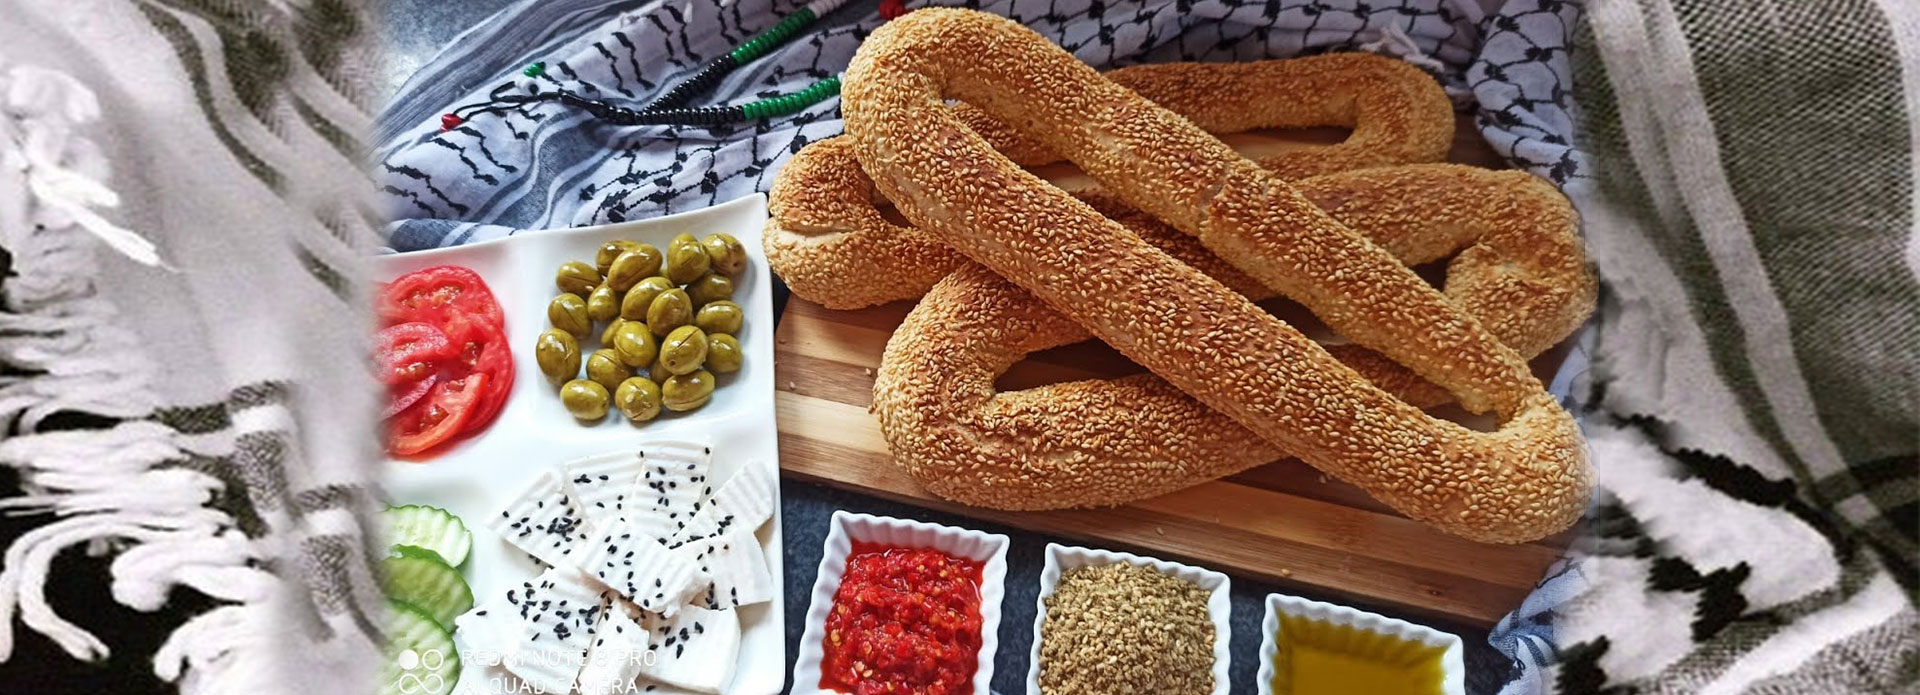 Ka’ek Al Quds or Jerusalem Sesame Bread